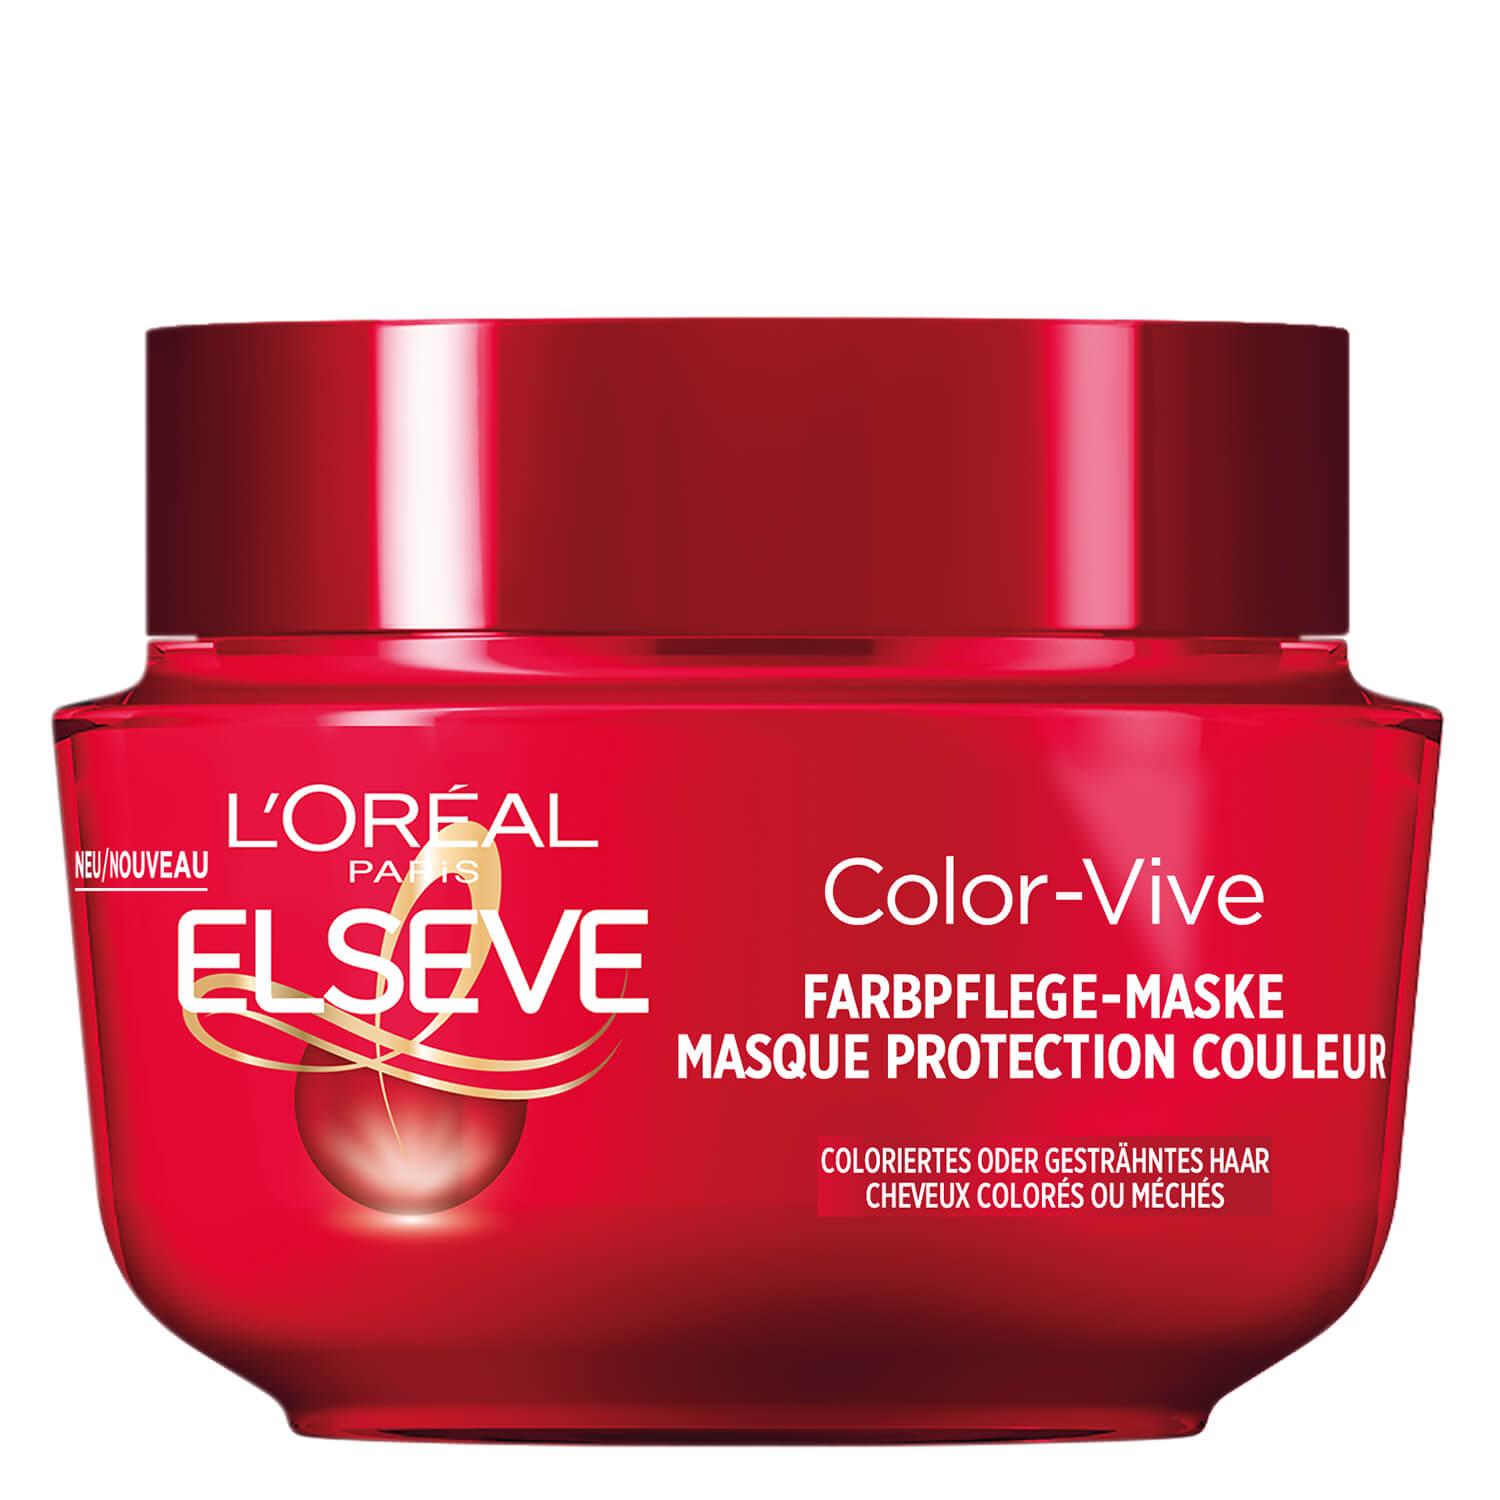 LOréal Elseve Haircare - Color-Vive Farbpflege-Maske